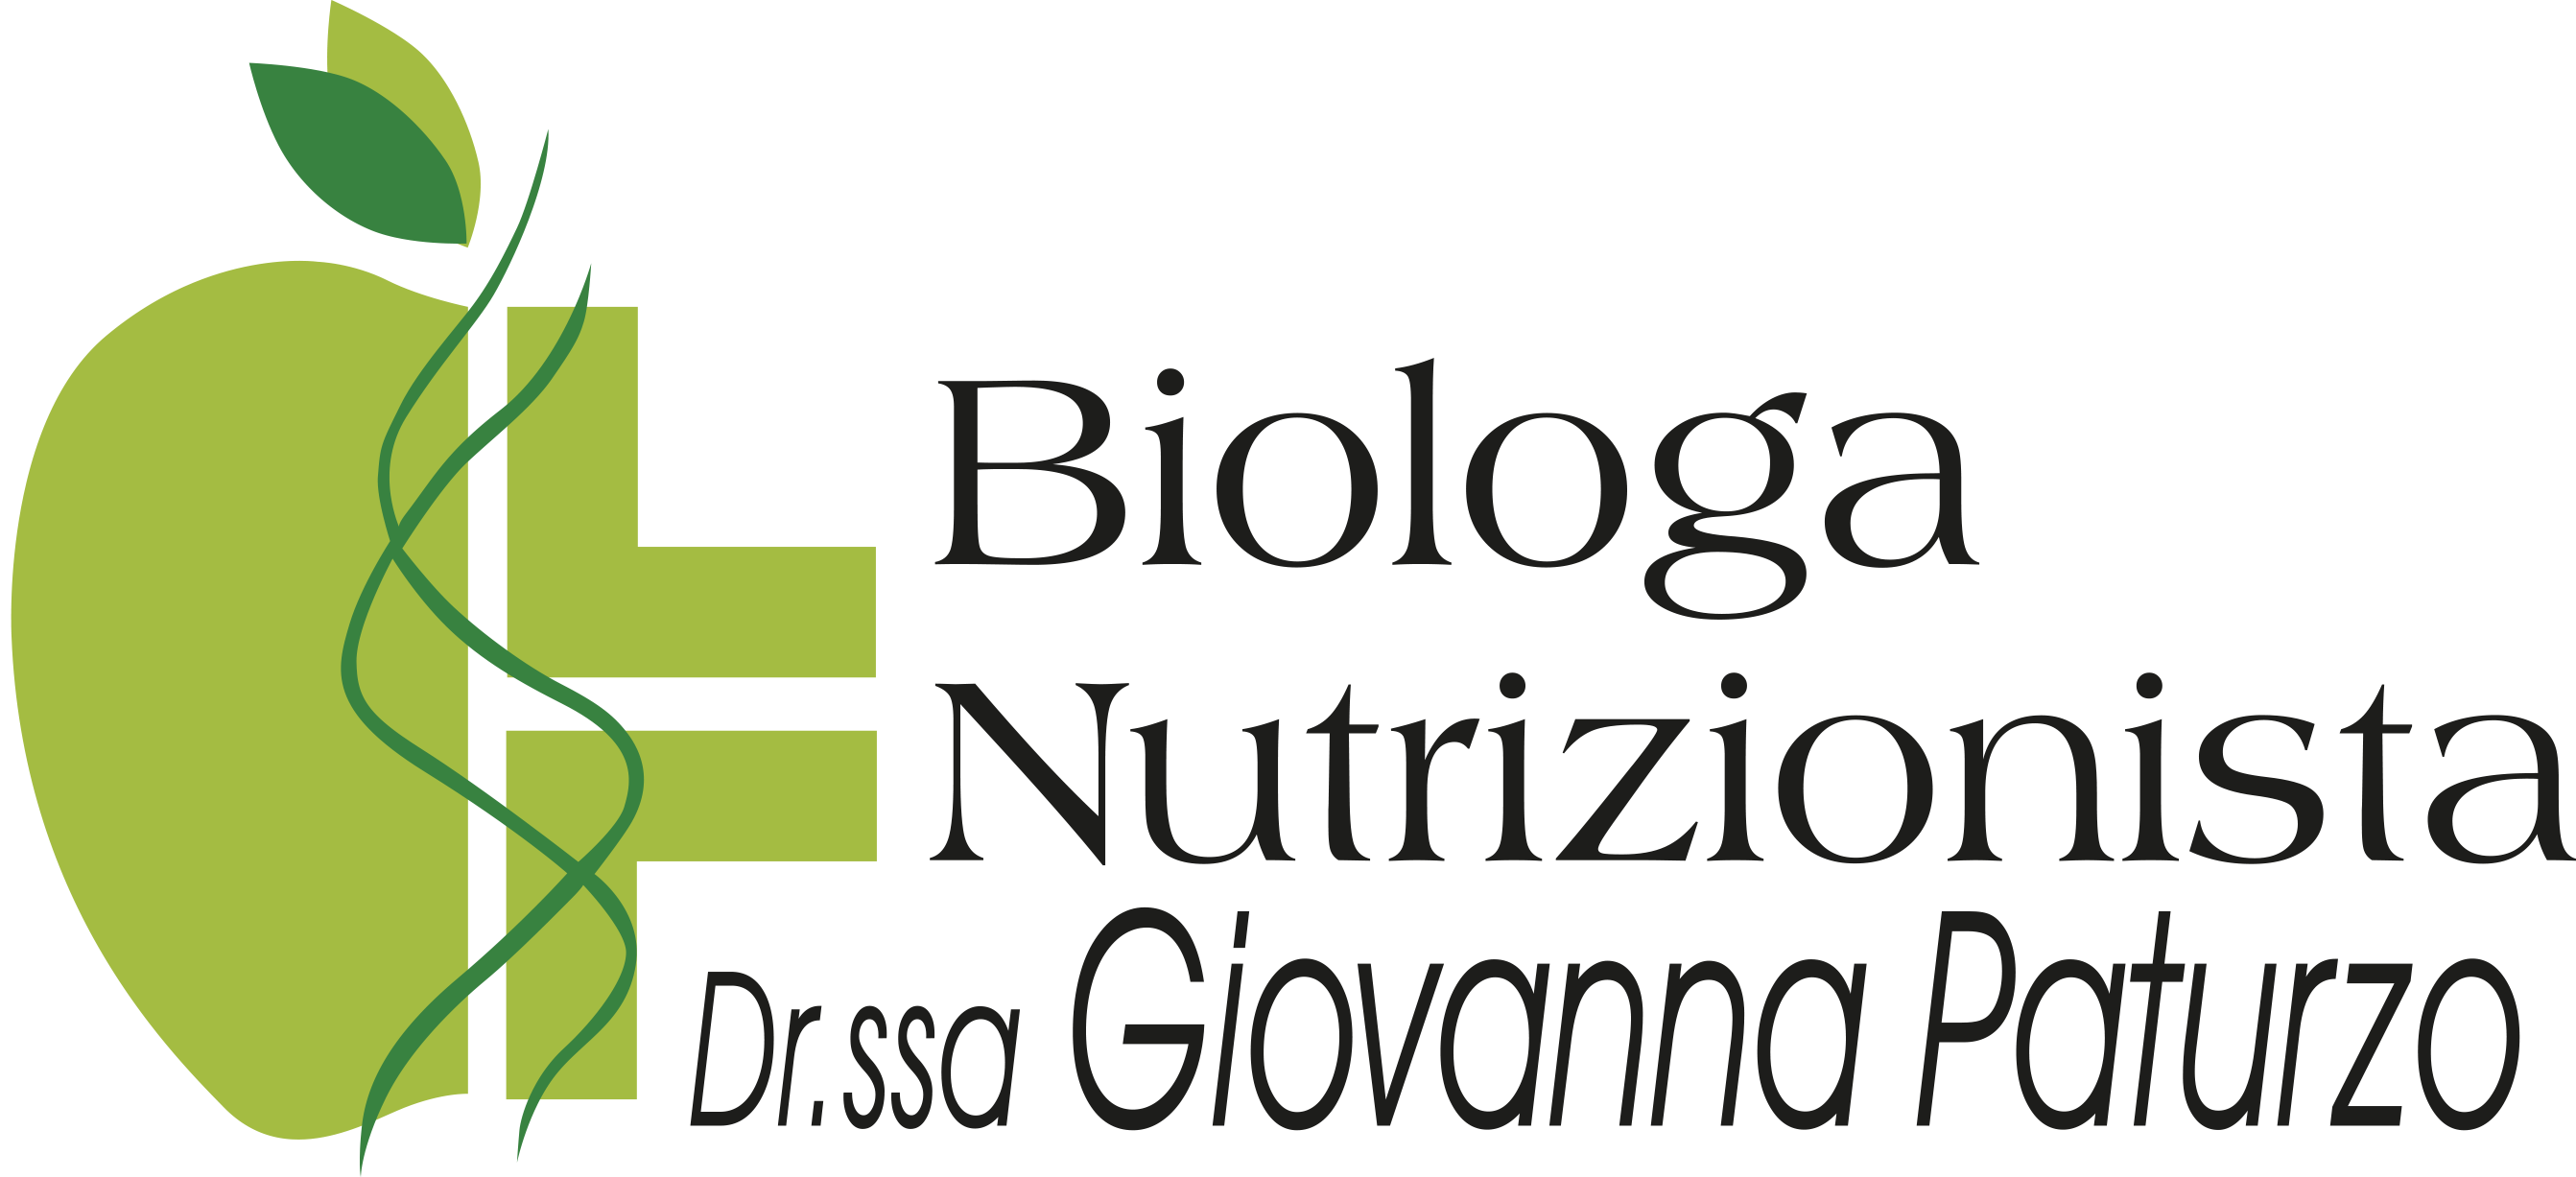 Giovanna Paturzo Biologa Nutrizionista